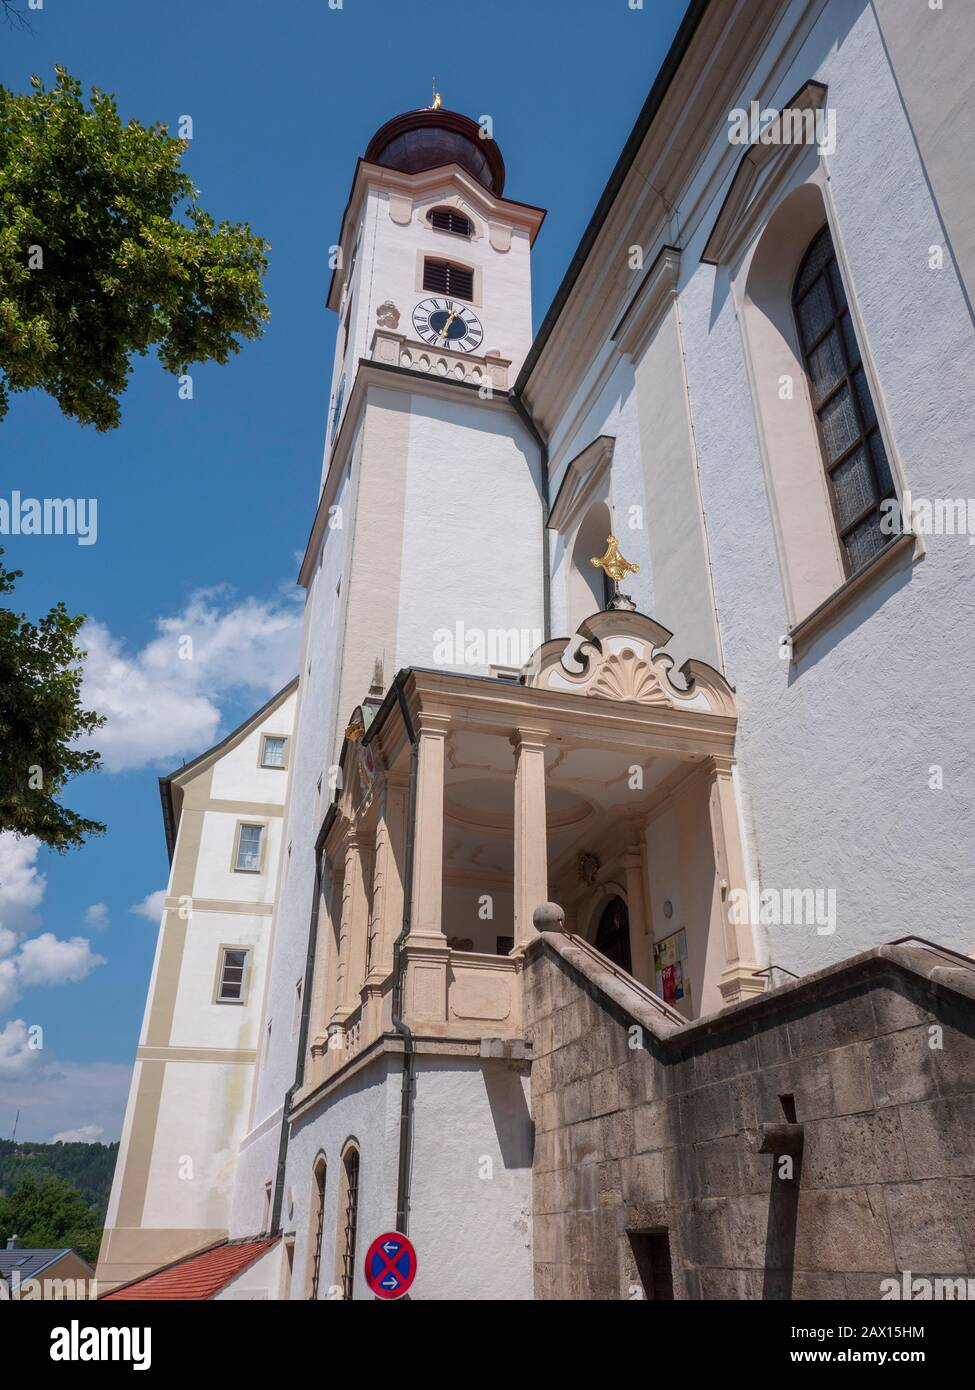 Eichstätt, Klosterkirche St. Walburg, Altmühltal, Bayern, Deutschland | Eichstaett, St. Walburg Abbey church, Altmuehltal, Bavaria, Germany Stock Photo